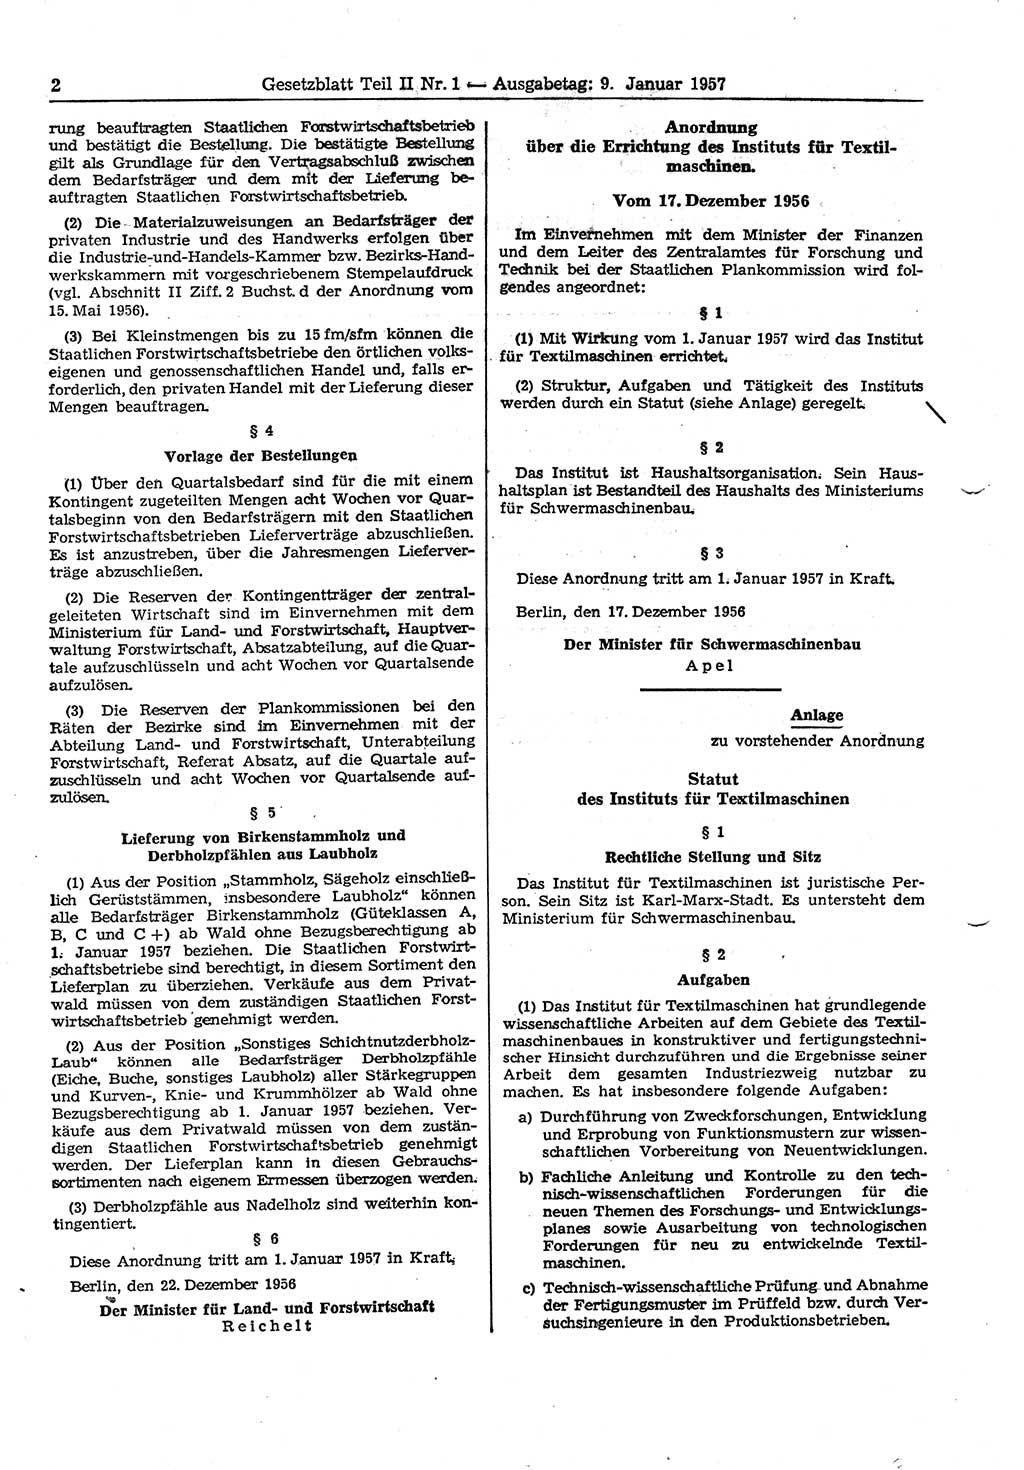 Gesetzblatt (GBl.) der Deutschen Demokratischen Republik (DDR) Teil ⅠⅠ 1957, Seite 2 (GBl. DDR ⅠⅠ 1957, S. 2)